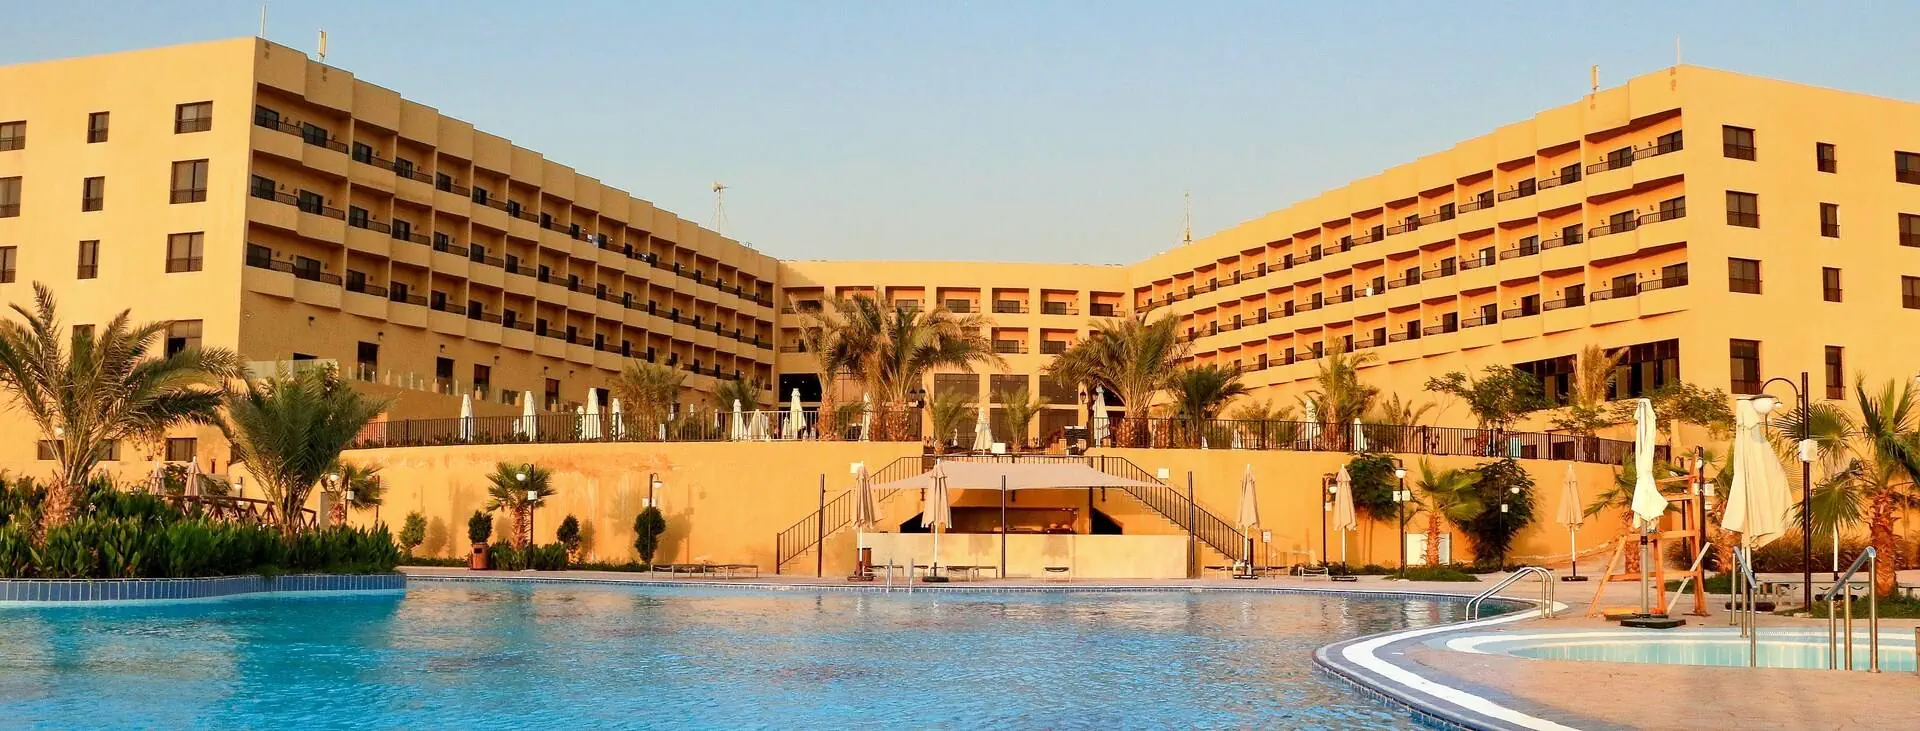 Jordania Al Karak  Sowayma Grand East Resort